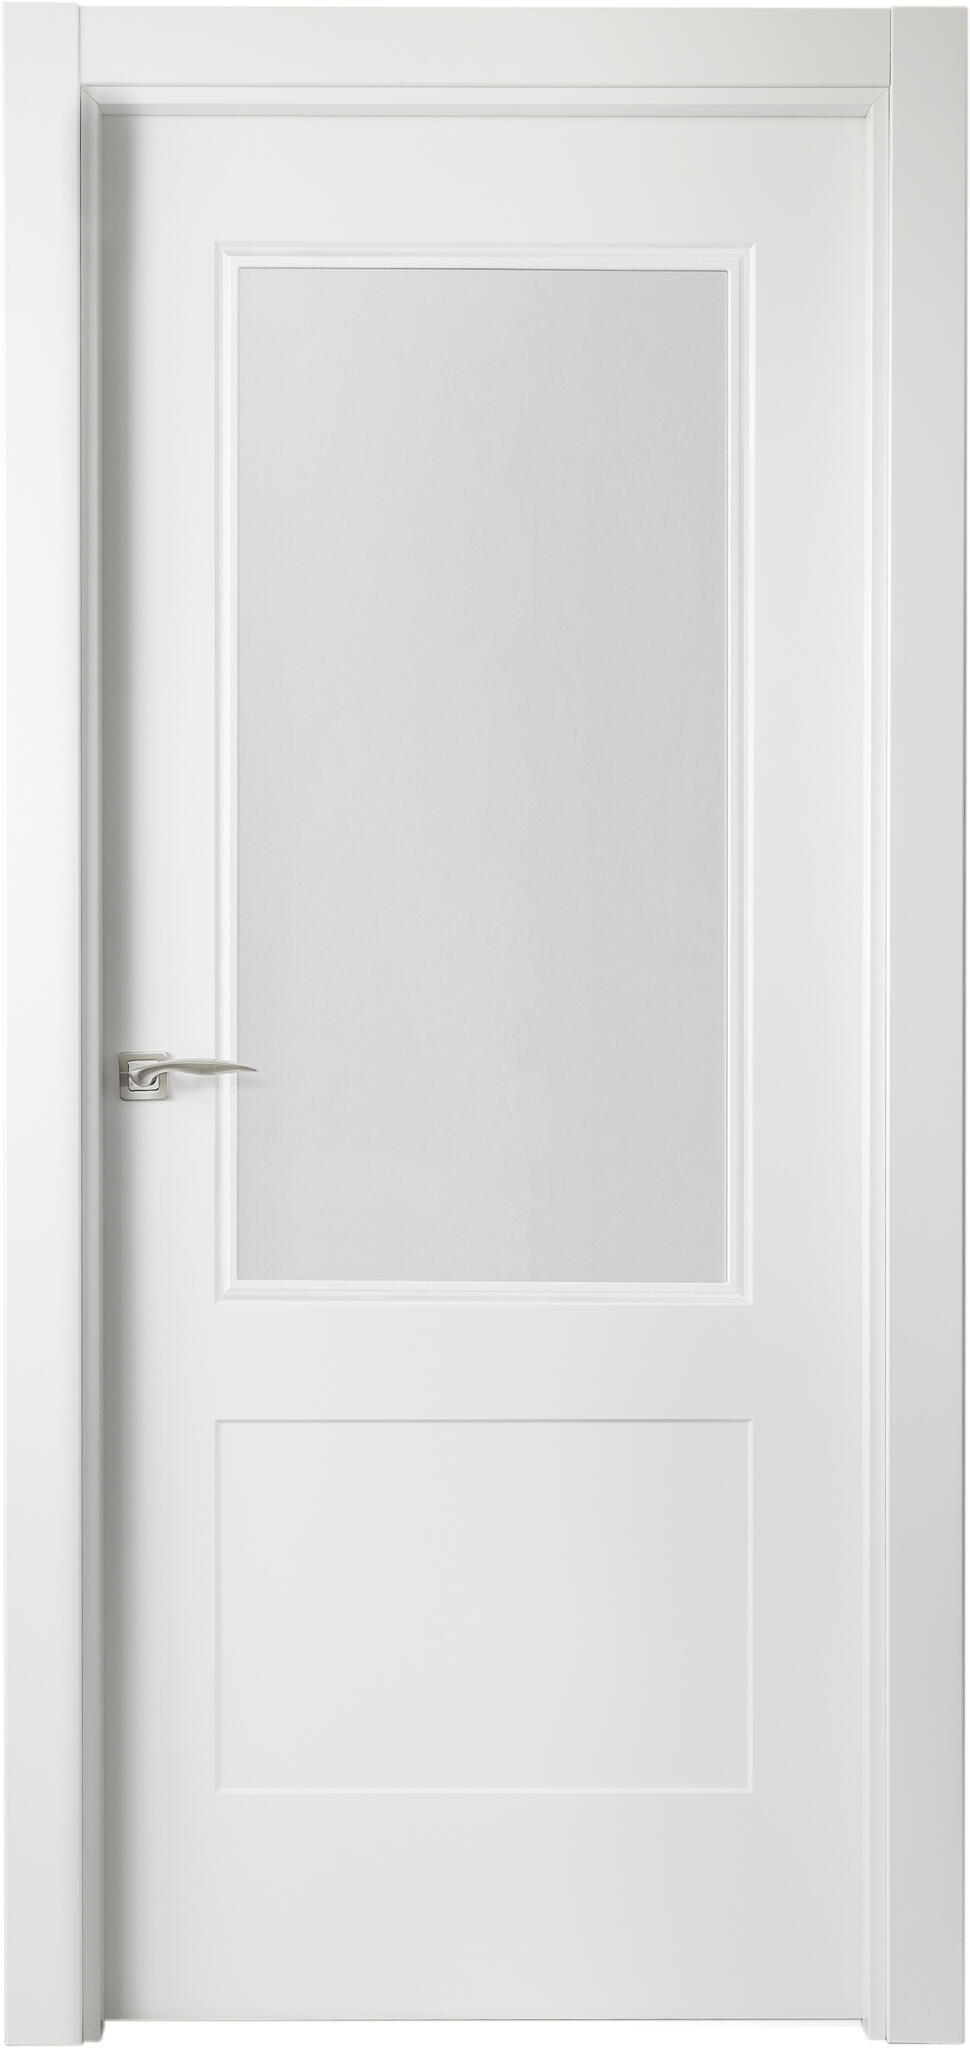 Puerta atlanta plus blanco apertura derecha con cristal de 9x82,5cm